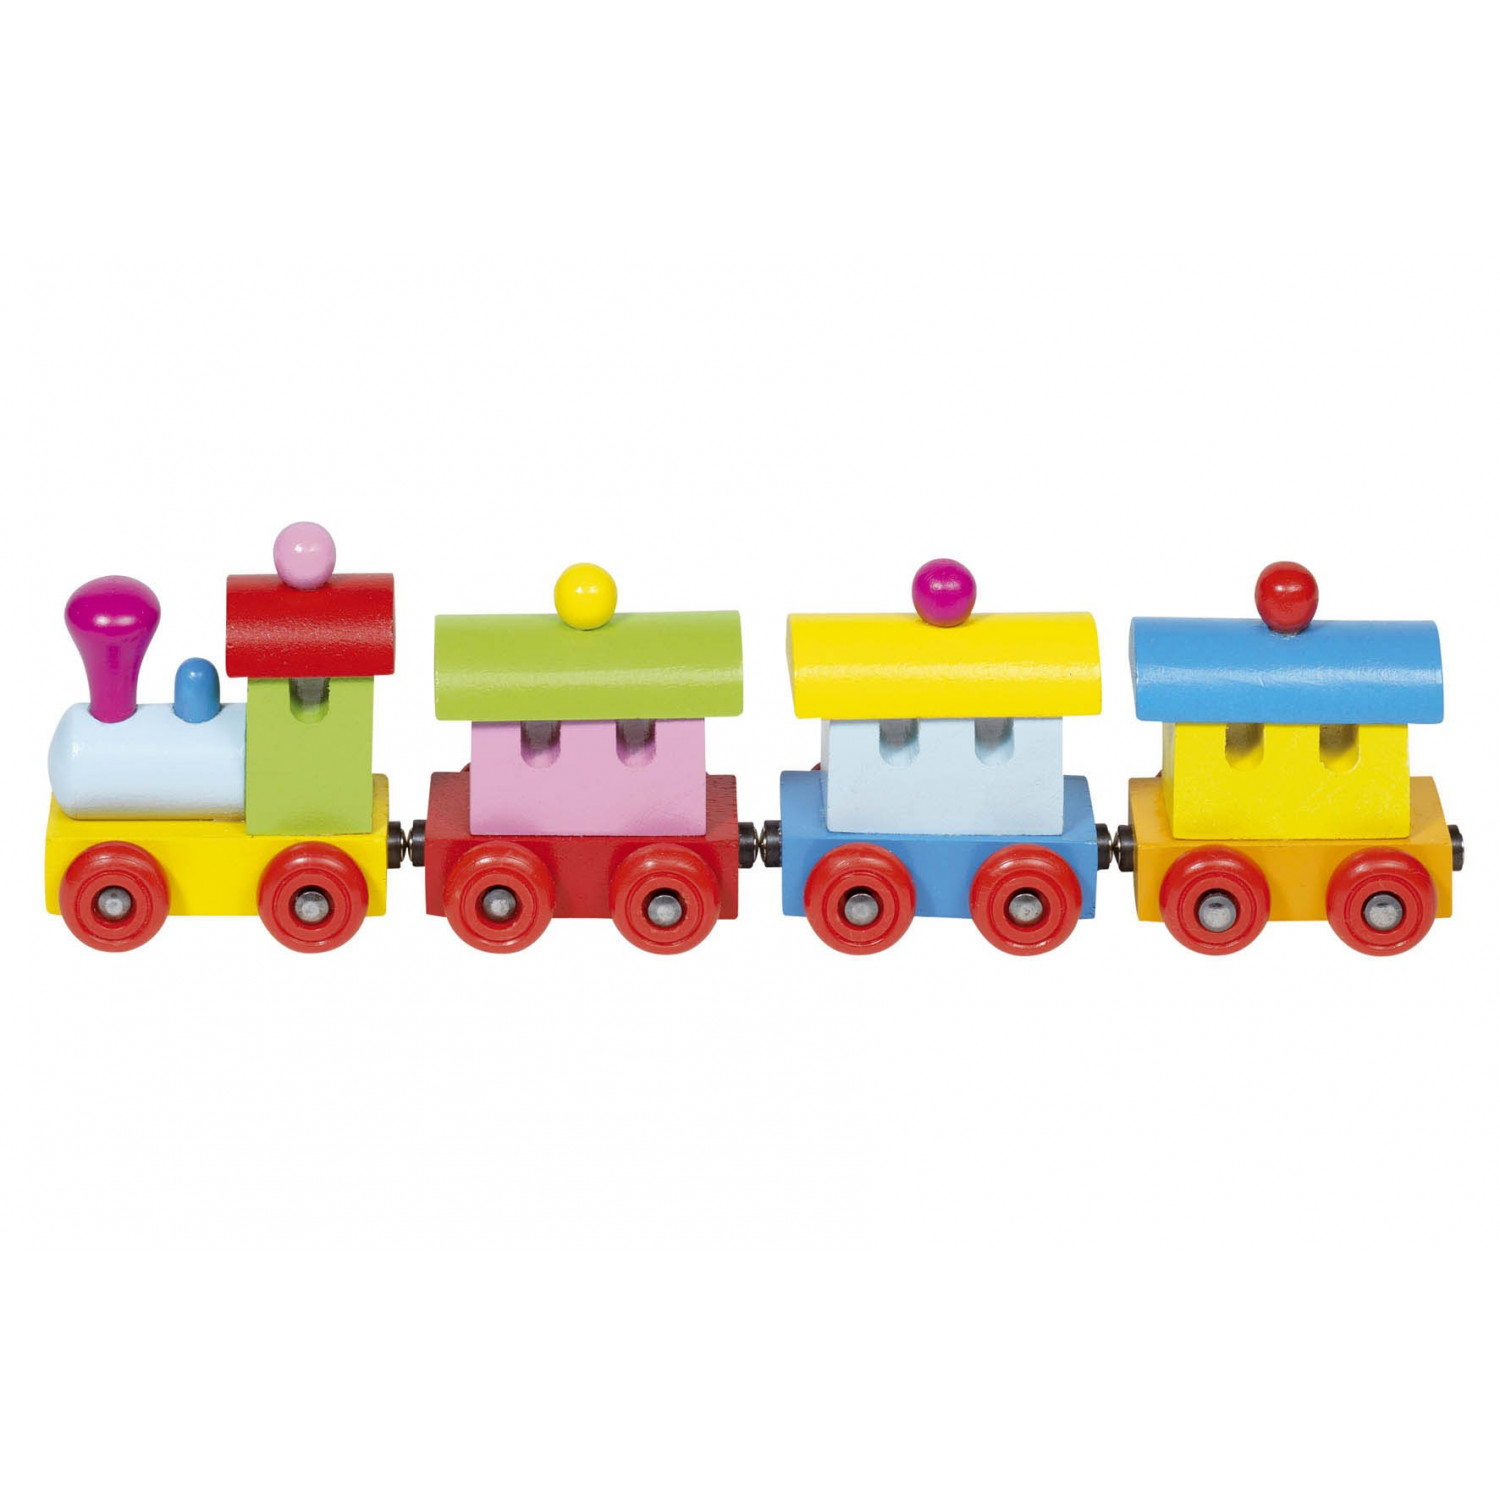 Паровоз с 6 вагонами. Паровозик игрушка. Поезд детский игрушка. Паровоз с вагонами игрушка. Паровозик игрушечный с вагонами.